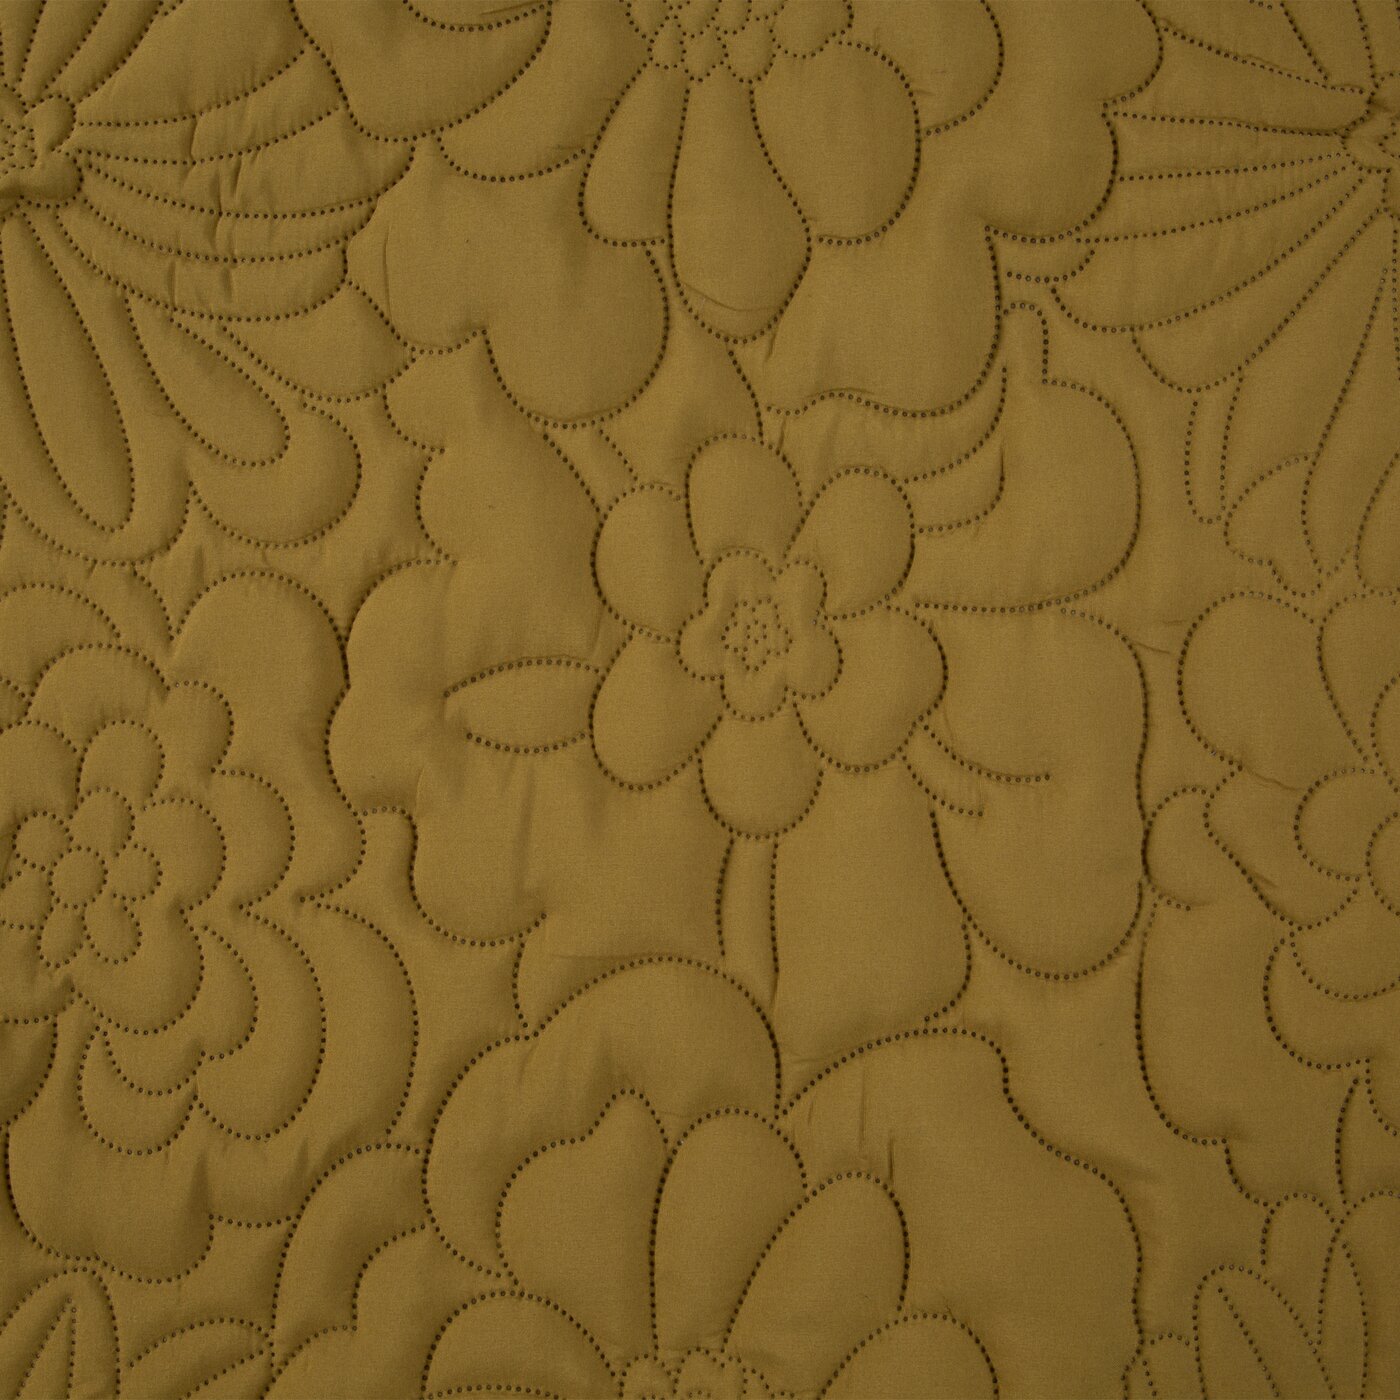 Cuvertură de Pat decorată cu model floral presat la cald muștar Perdele de Poveste